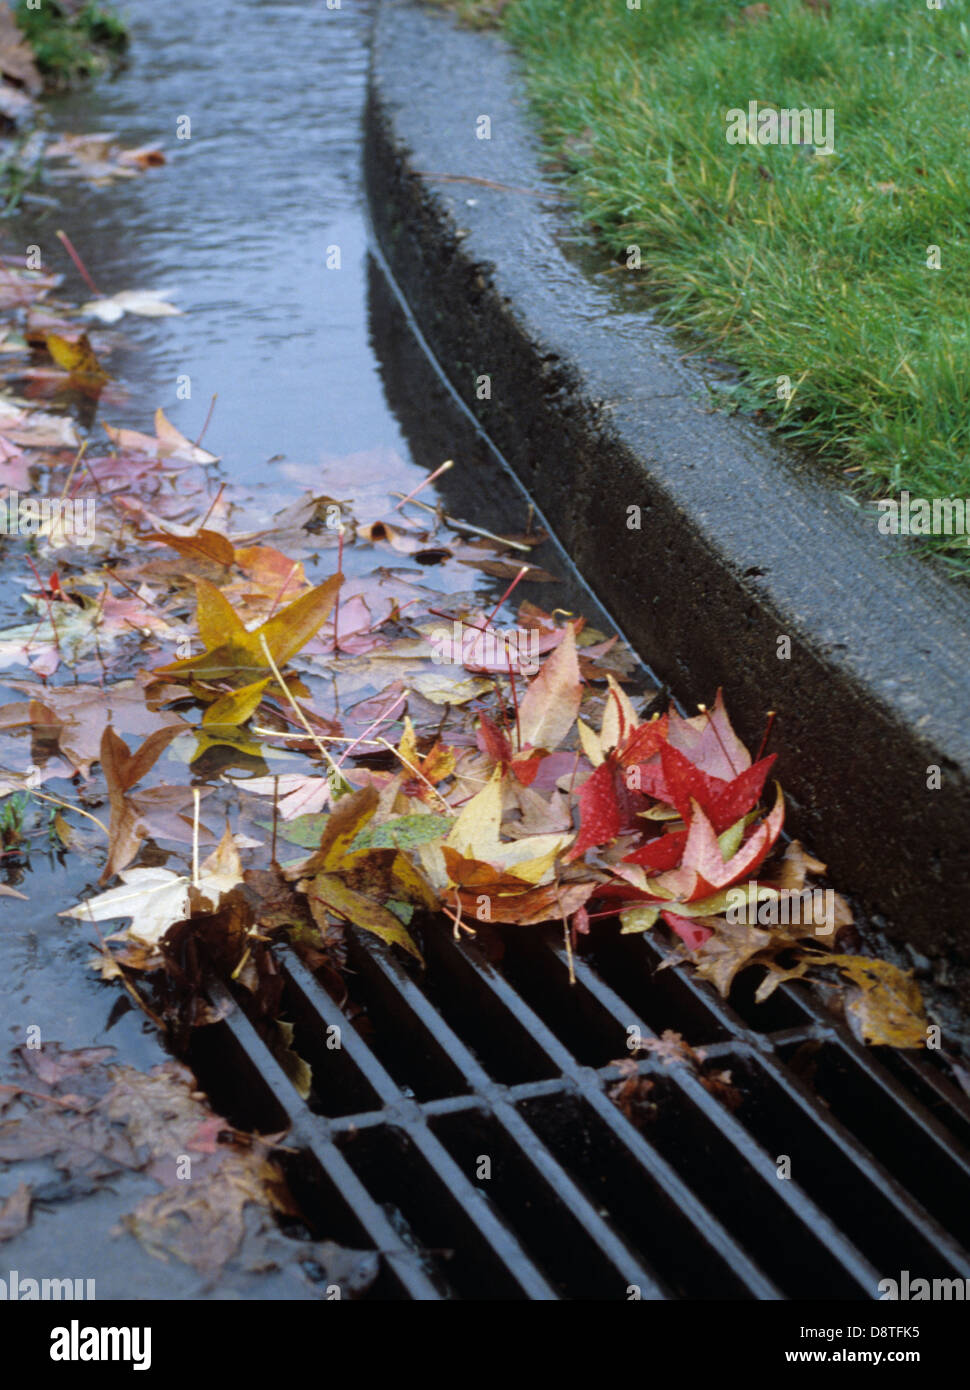 Wet-leaves-in-street-drain-Eugene-OR-791